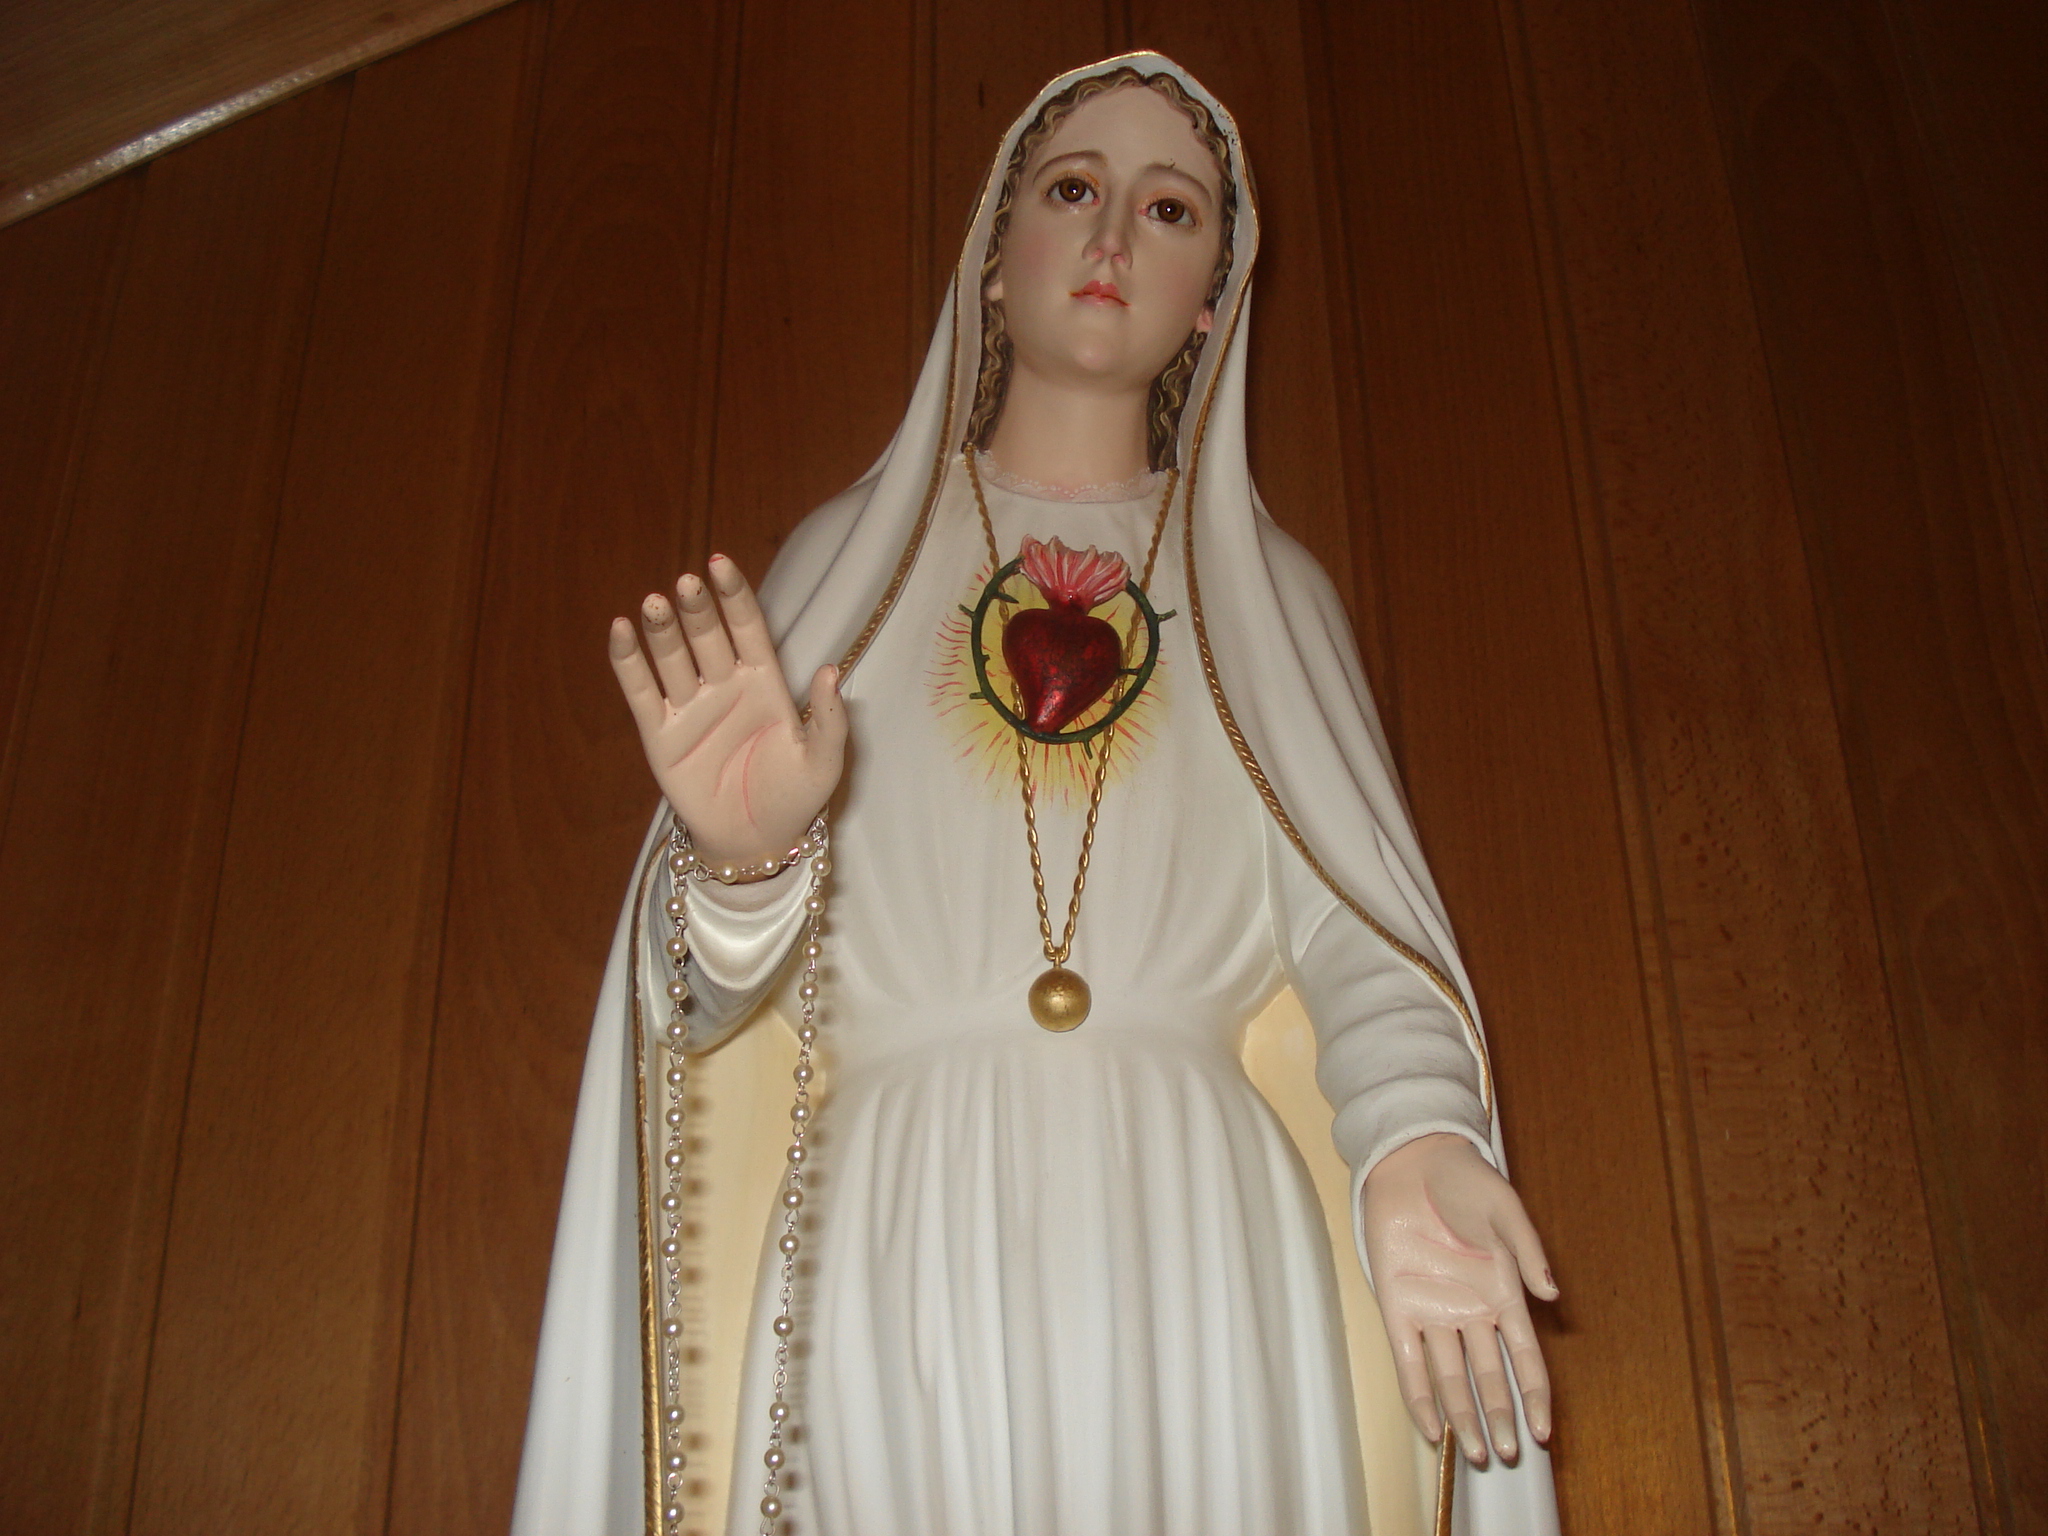 O Imaculado Coração de Maria